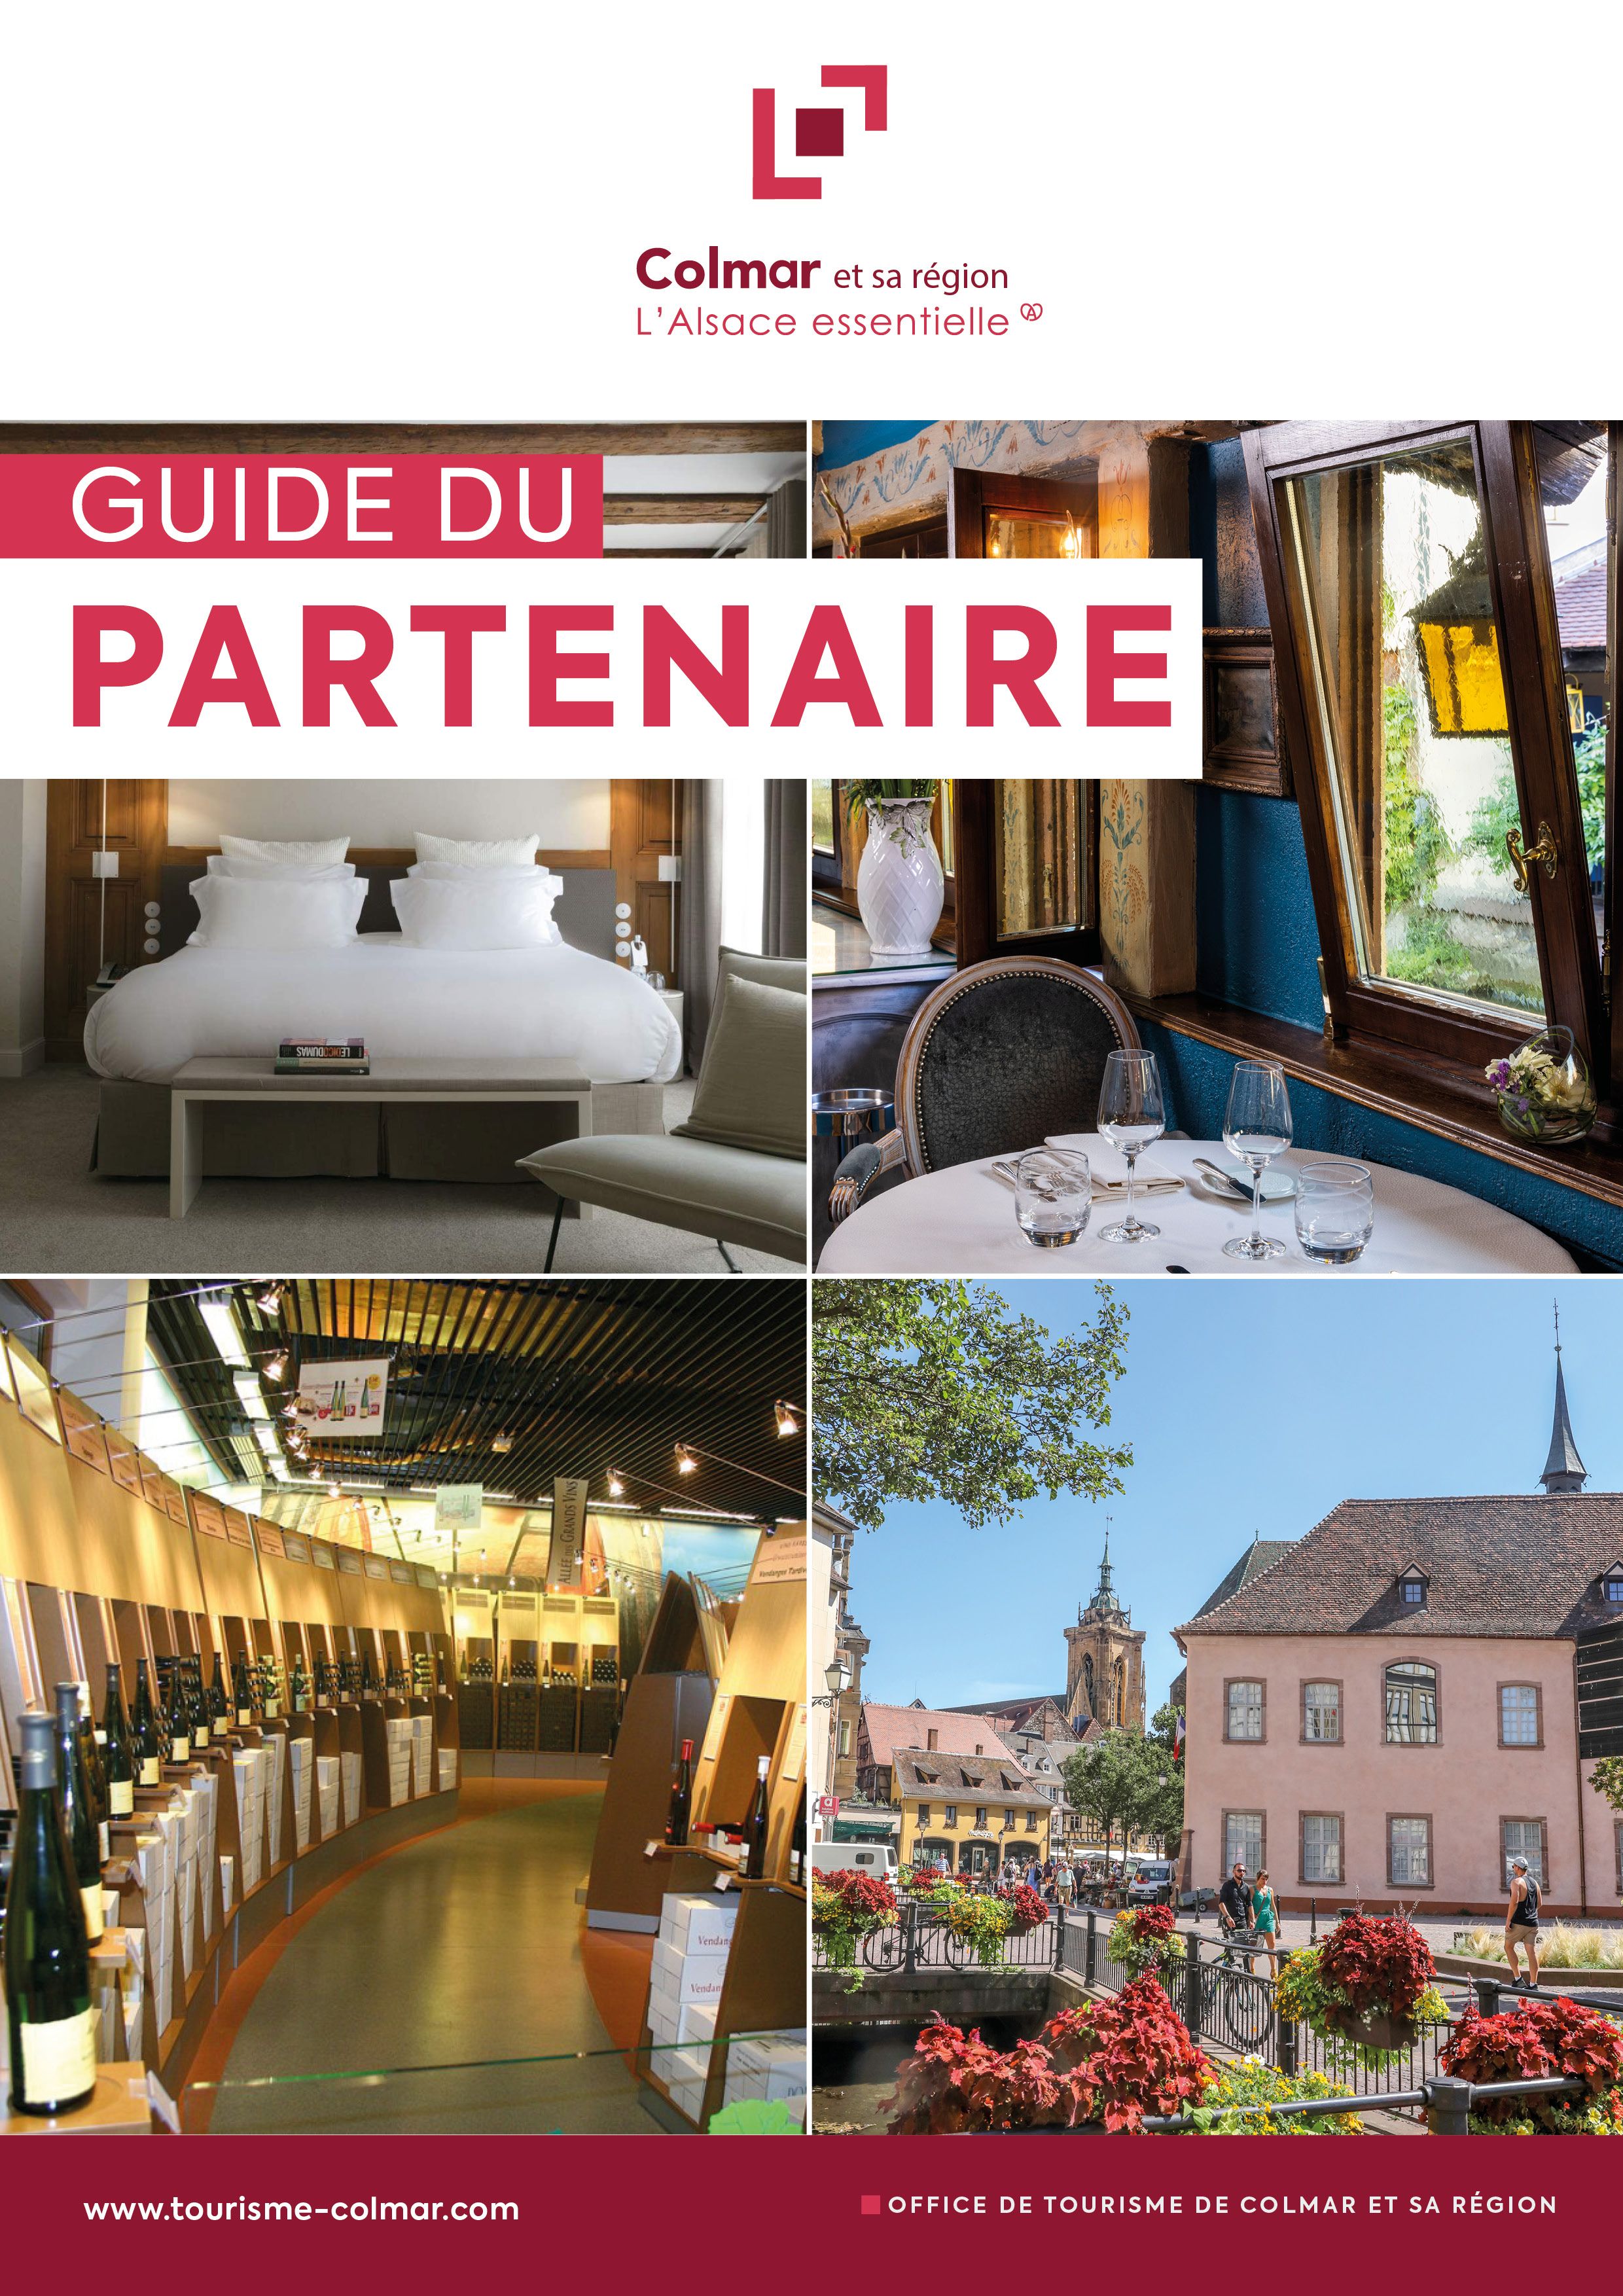 Couverture guide du partenaire - Office de tourisme de Colmar